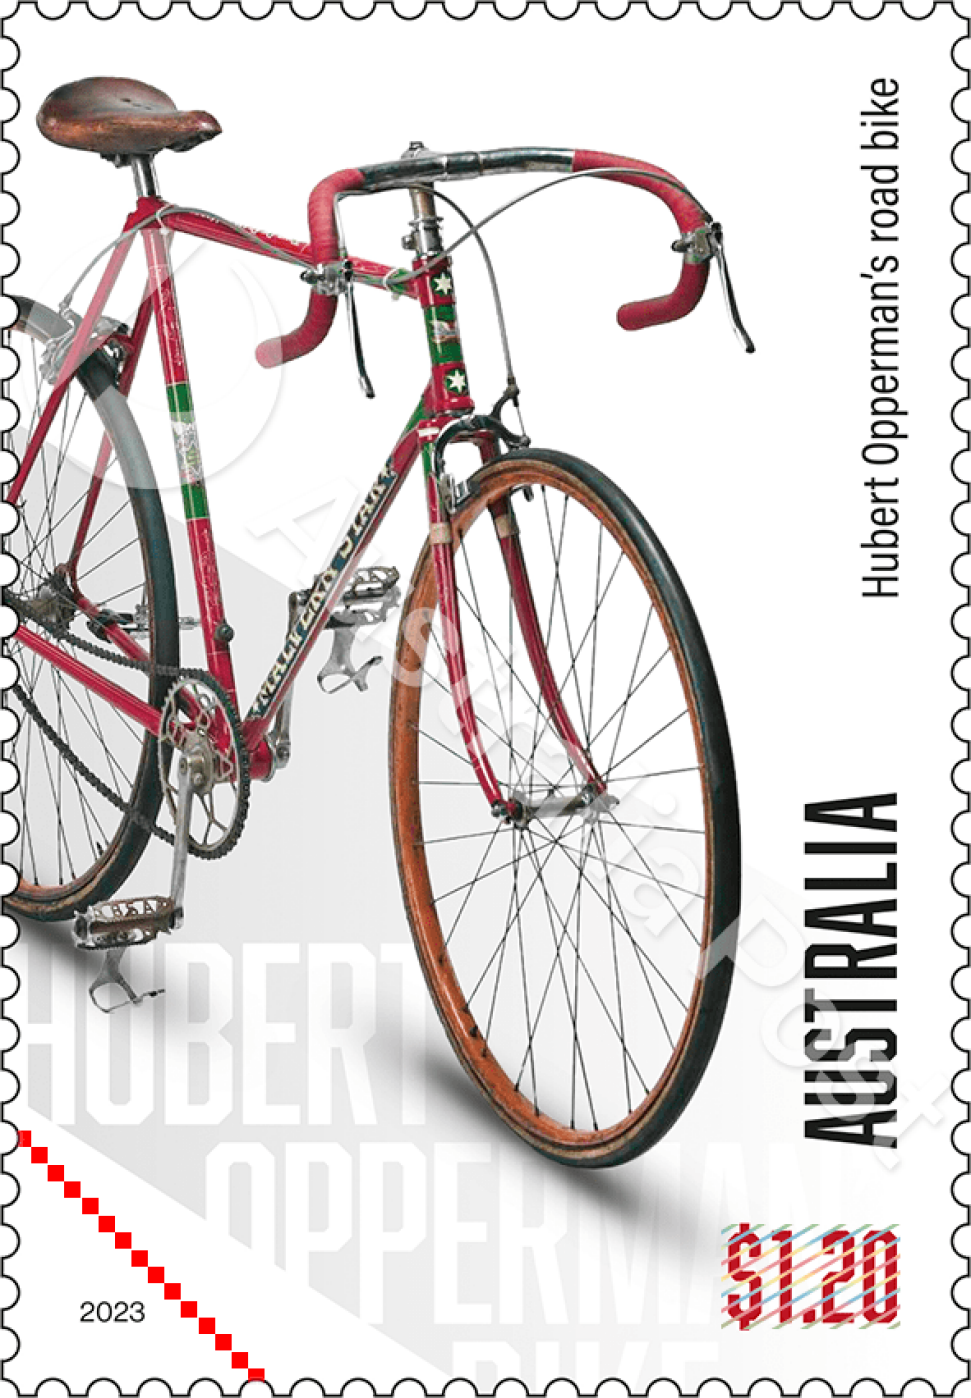 $1.20 Hubert Opperman’s “Tour de France” model bike